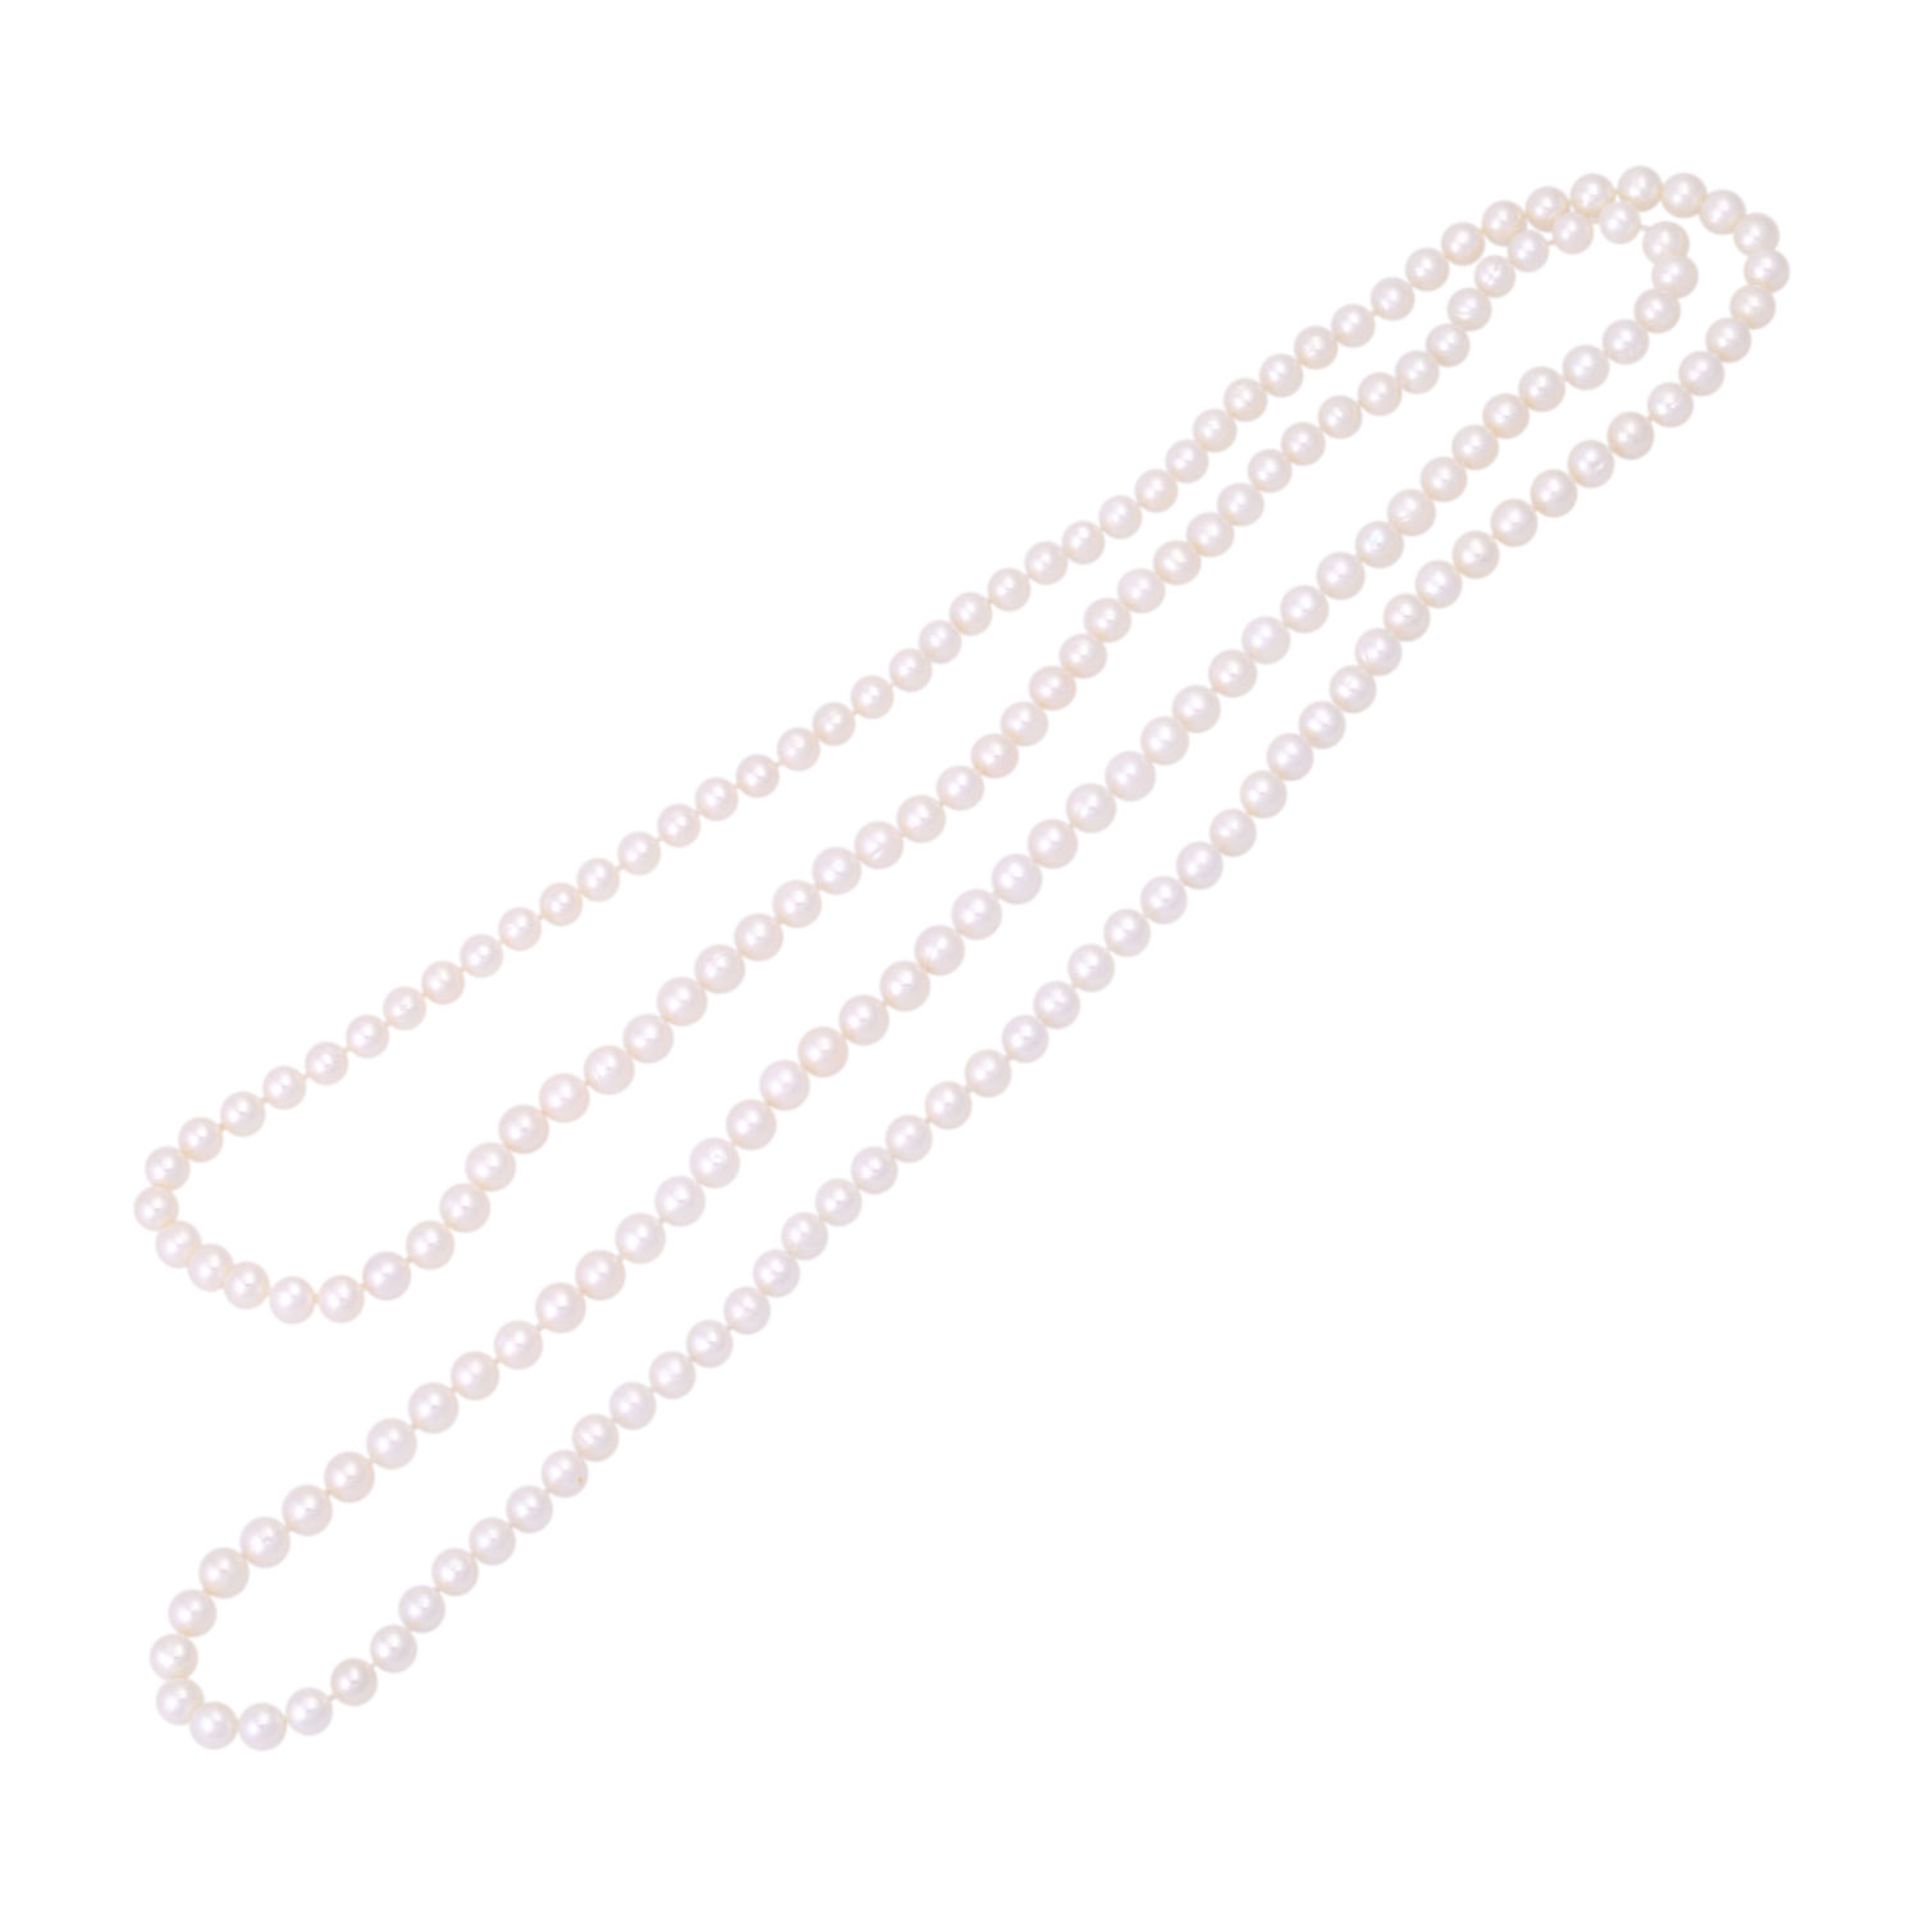 Lange Perlenketteaus weißen Zuchtperlen ca. 6,5-7 mm, endlos aufgezogen, schöner Lüster. 20./21. Jh. - Bild 3 aus 4